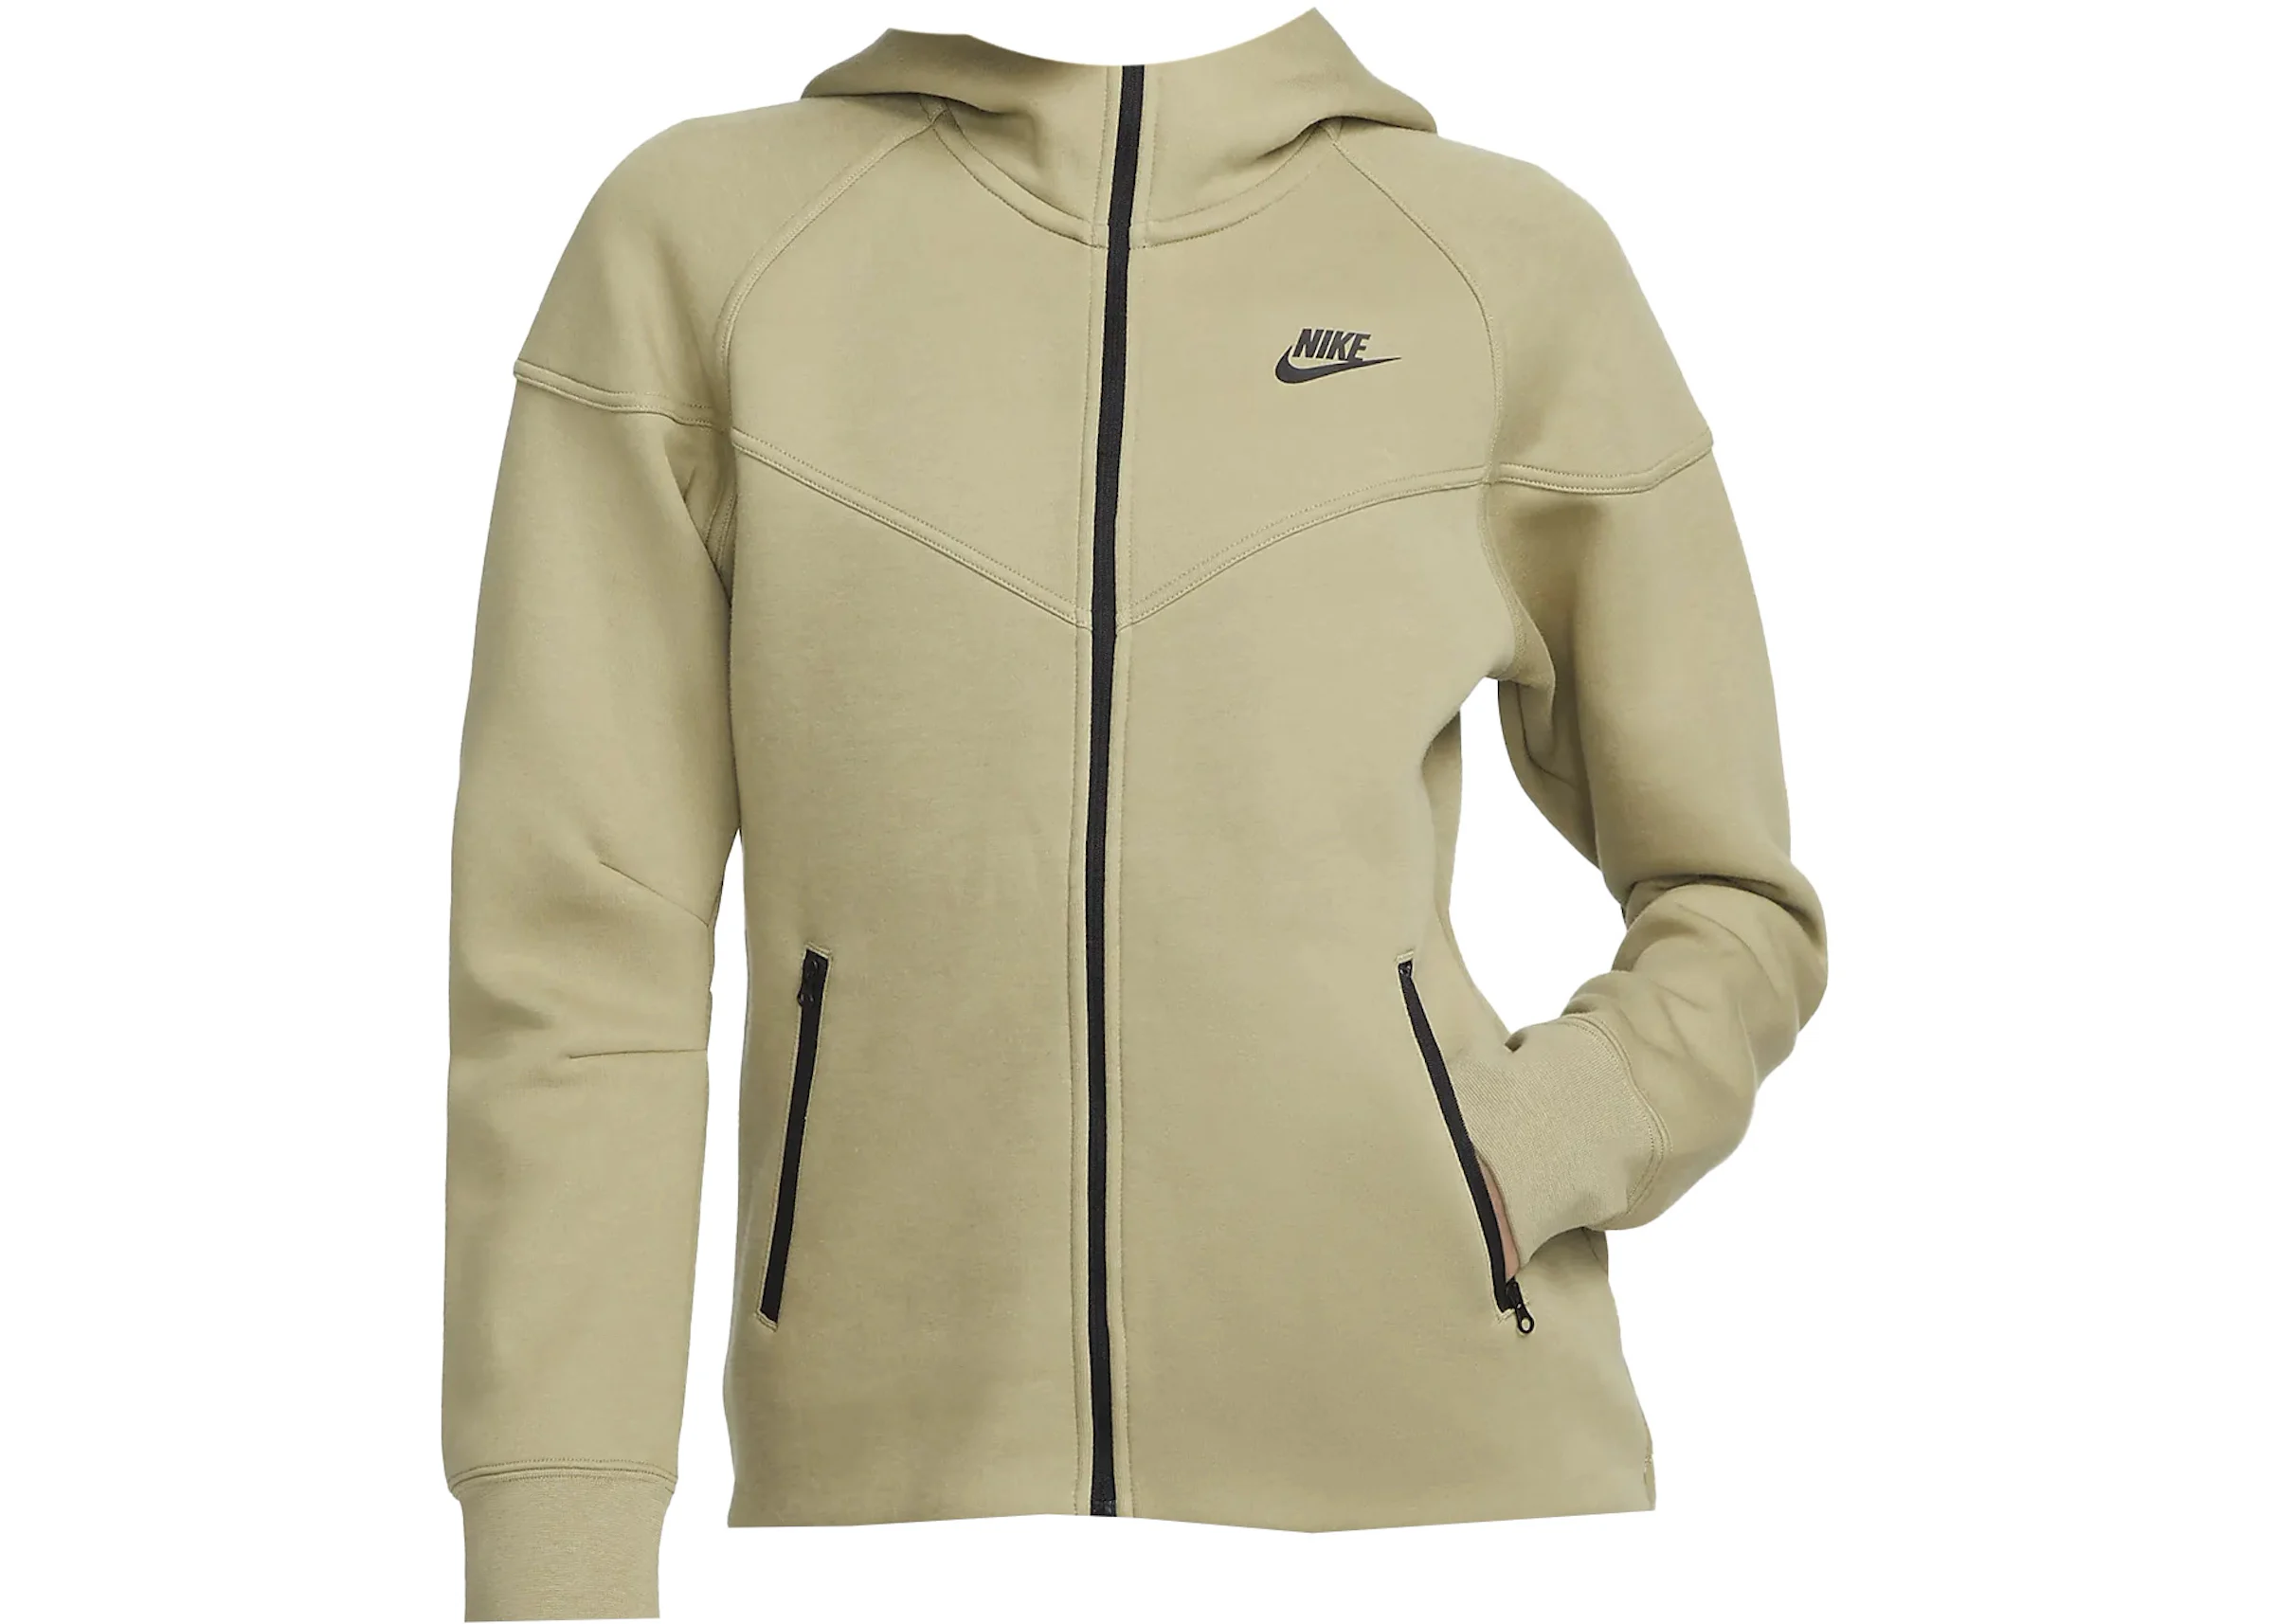 Nike Women's Sportswear Tech Fleece Essential Full Zip Windrunner Pink